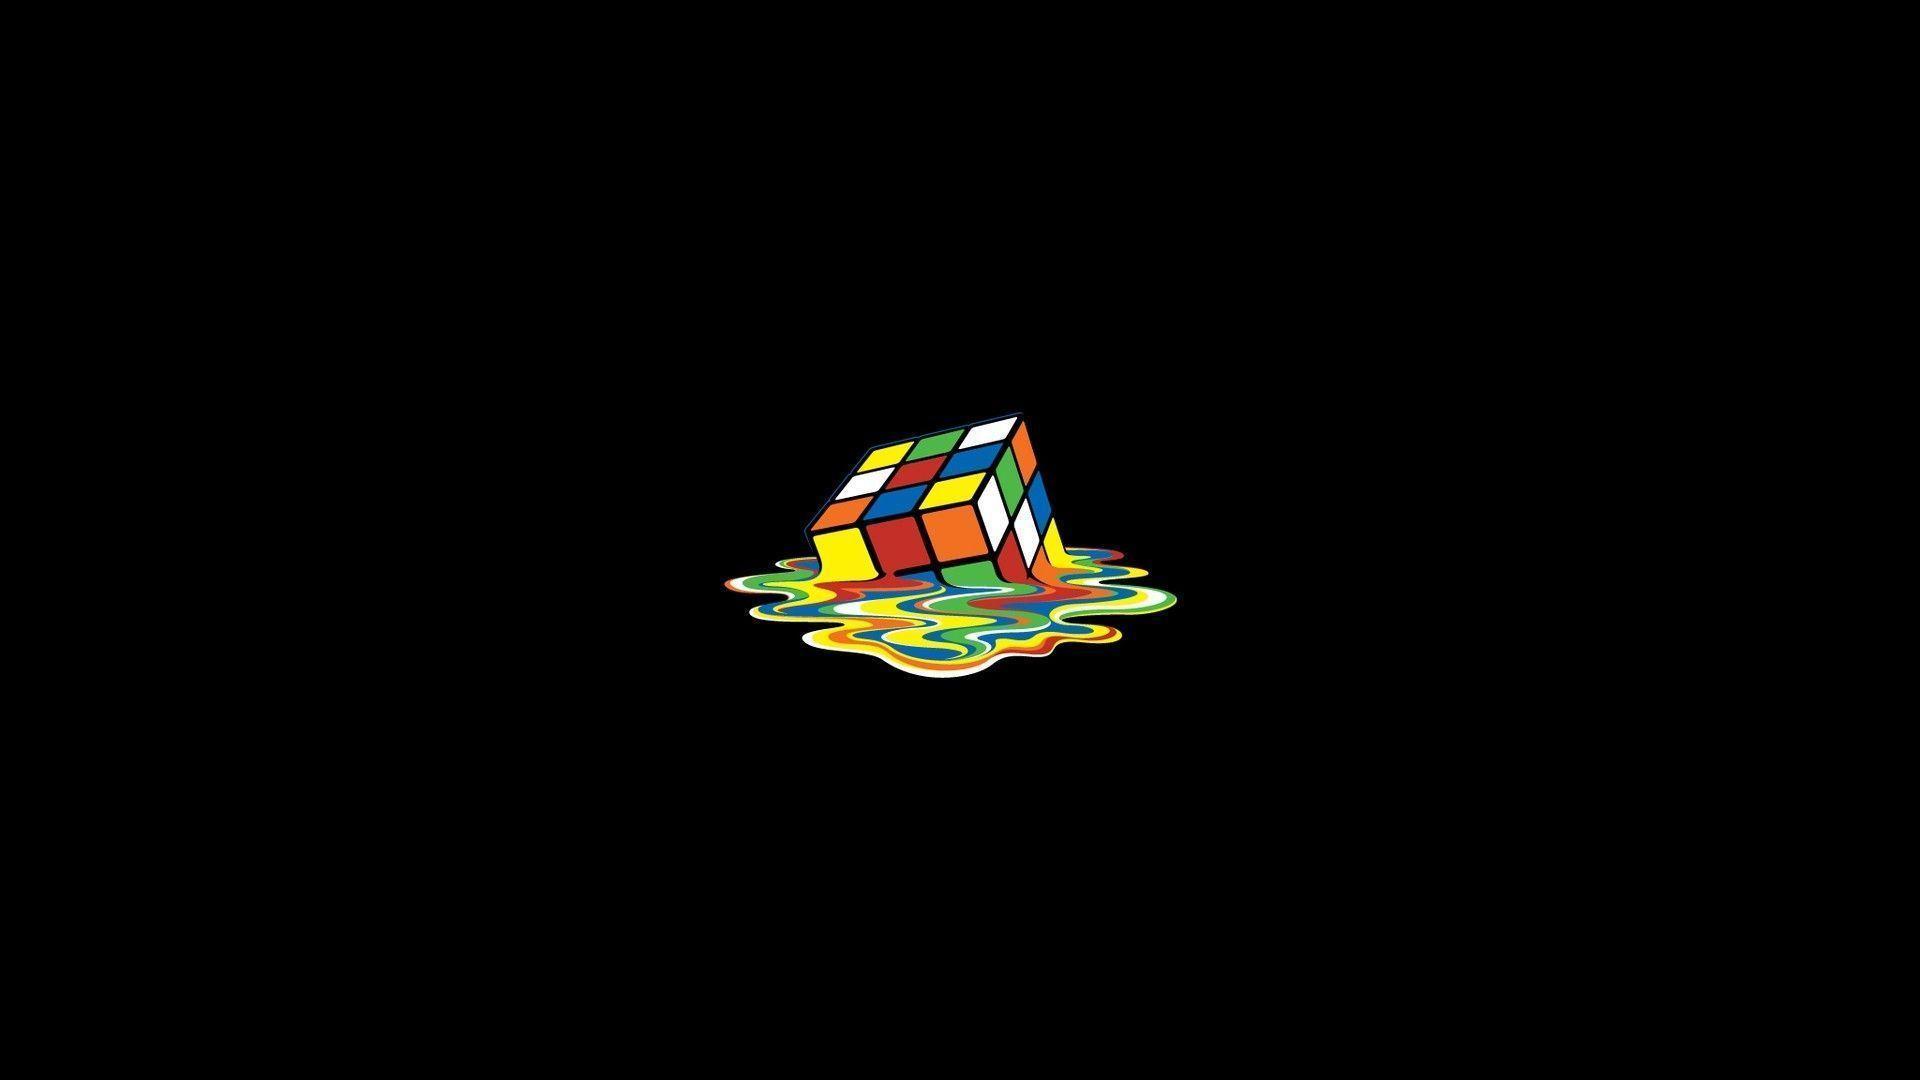 The Image of Minimalistic Melting Rubiks Cube Black Background